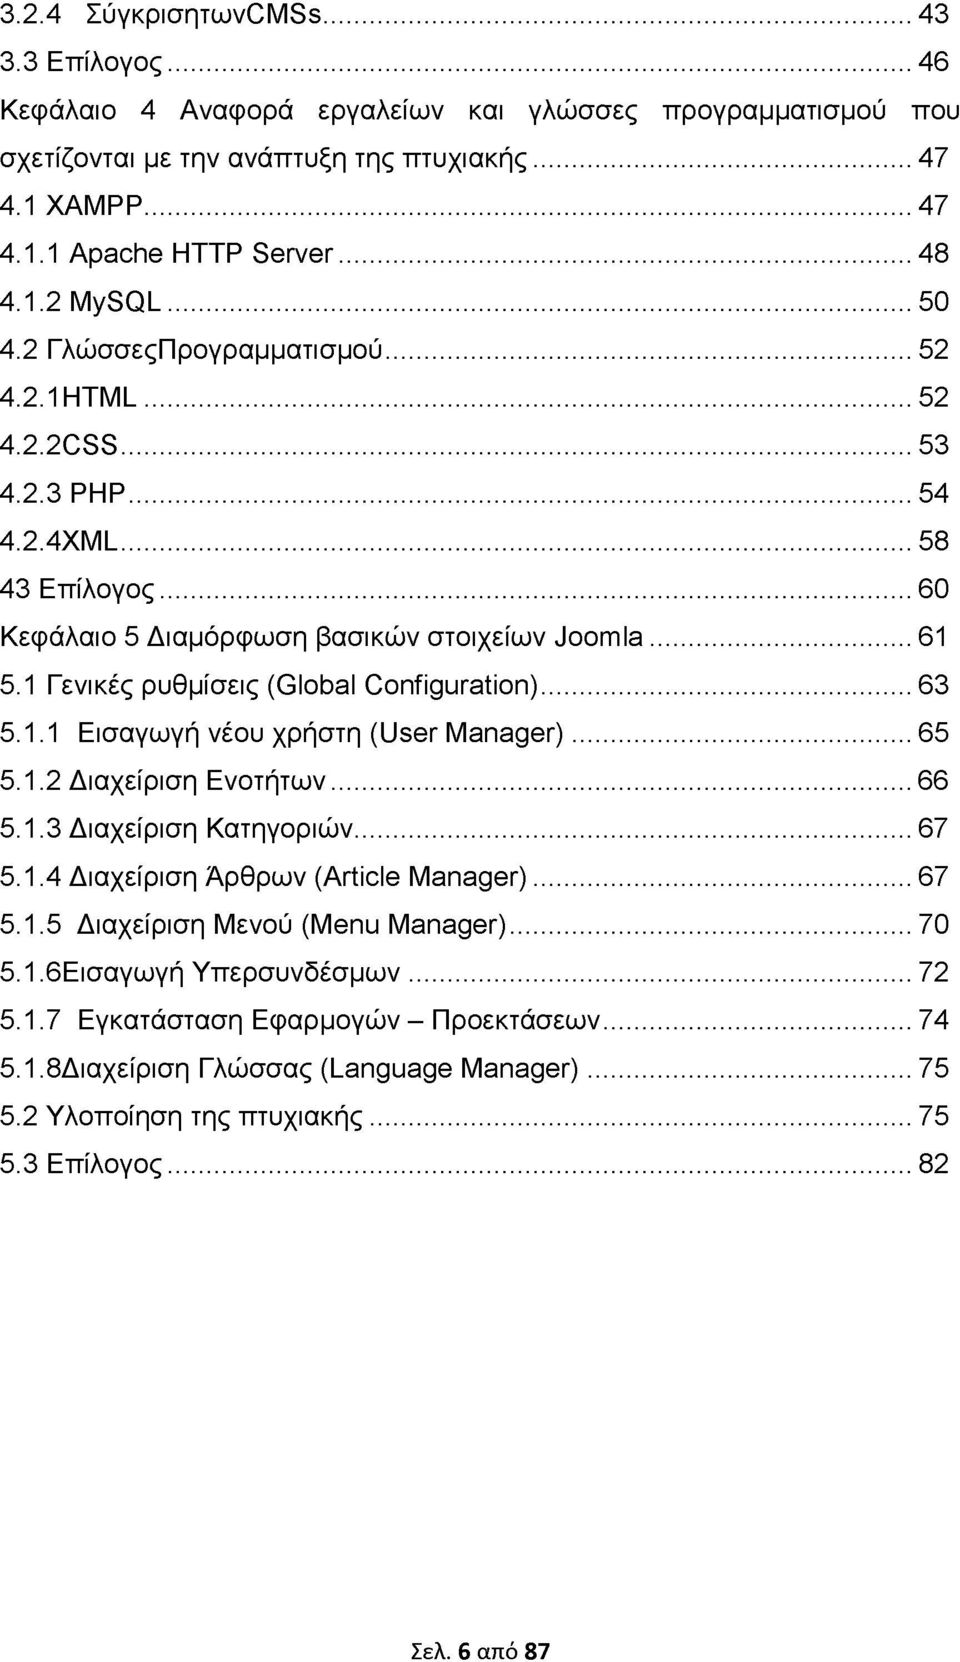 1 Γενικές ρυθμίσεις (Global Configuration)...63 5.1.1 Εισαγωγή νέου χρήστη (User Manager)...65 5.1.2 Διαχείριση Ενοτήτων... 66 5.1.3 Διαχείριση Κατηγοριών... 67 5.1.4 Διαχείριση Άρθρων (Article Manager).